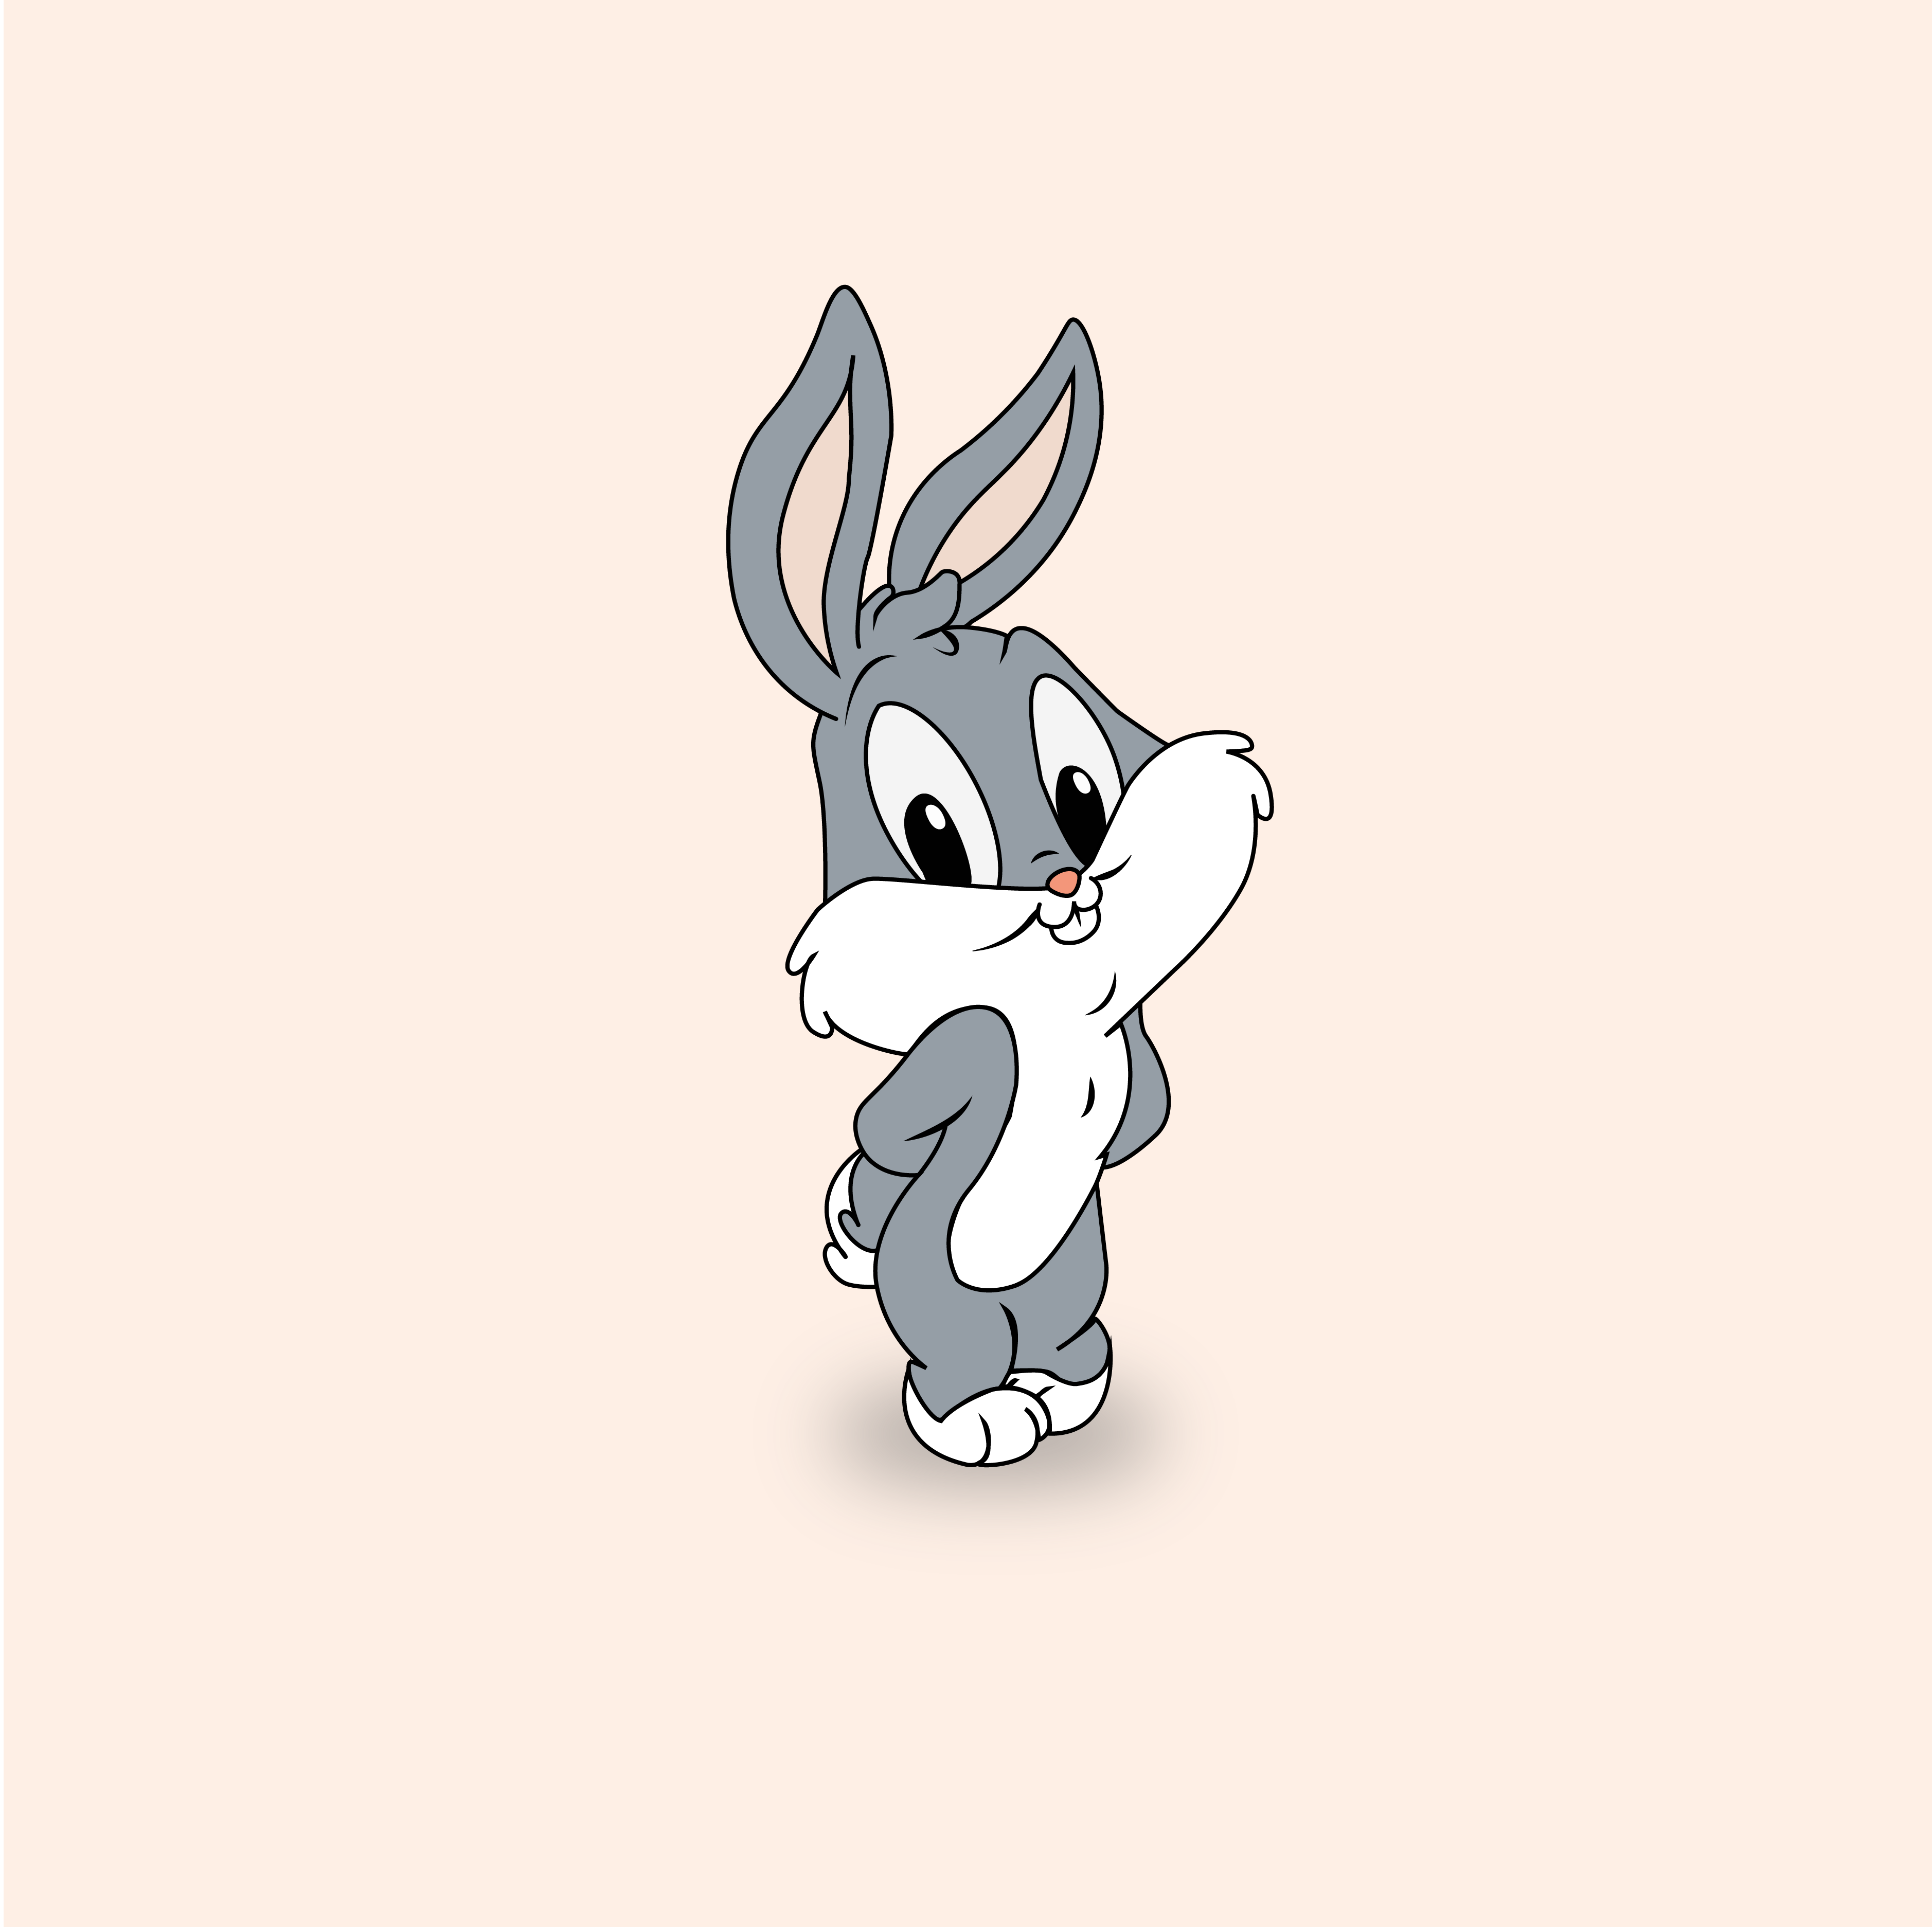 cartoon baby lola bunny